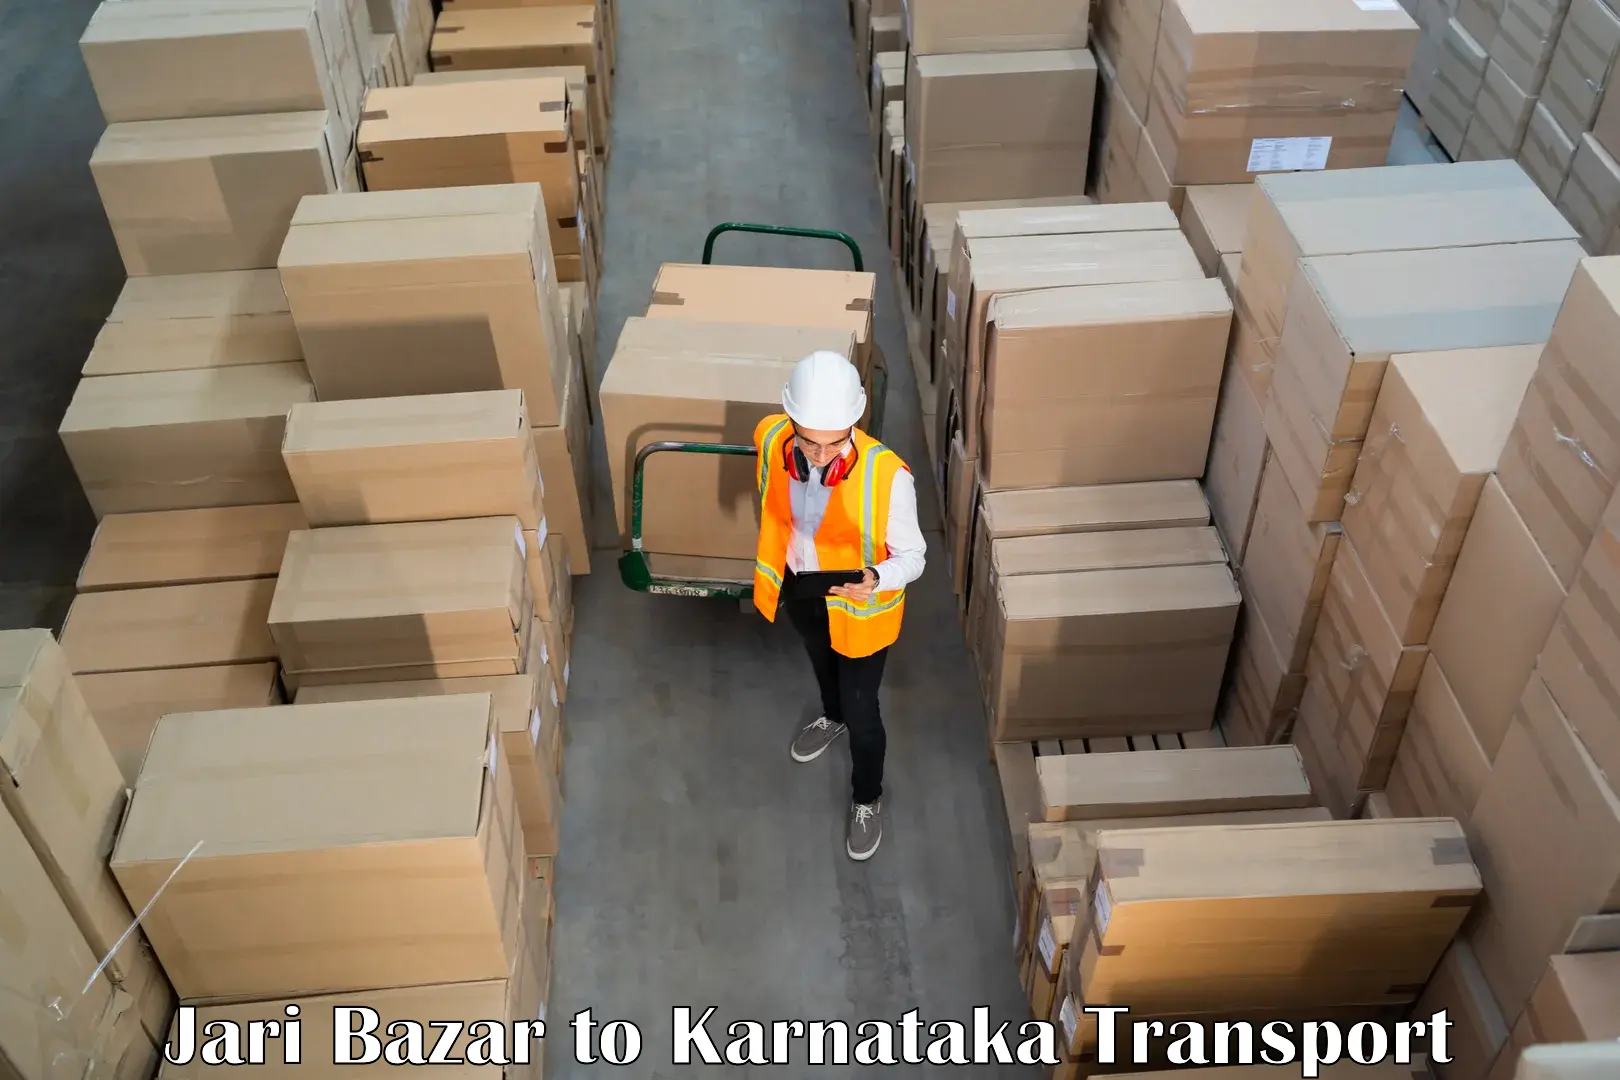 Goods delivery service Jari Bazar to Bengaluru